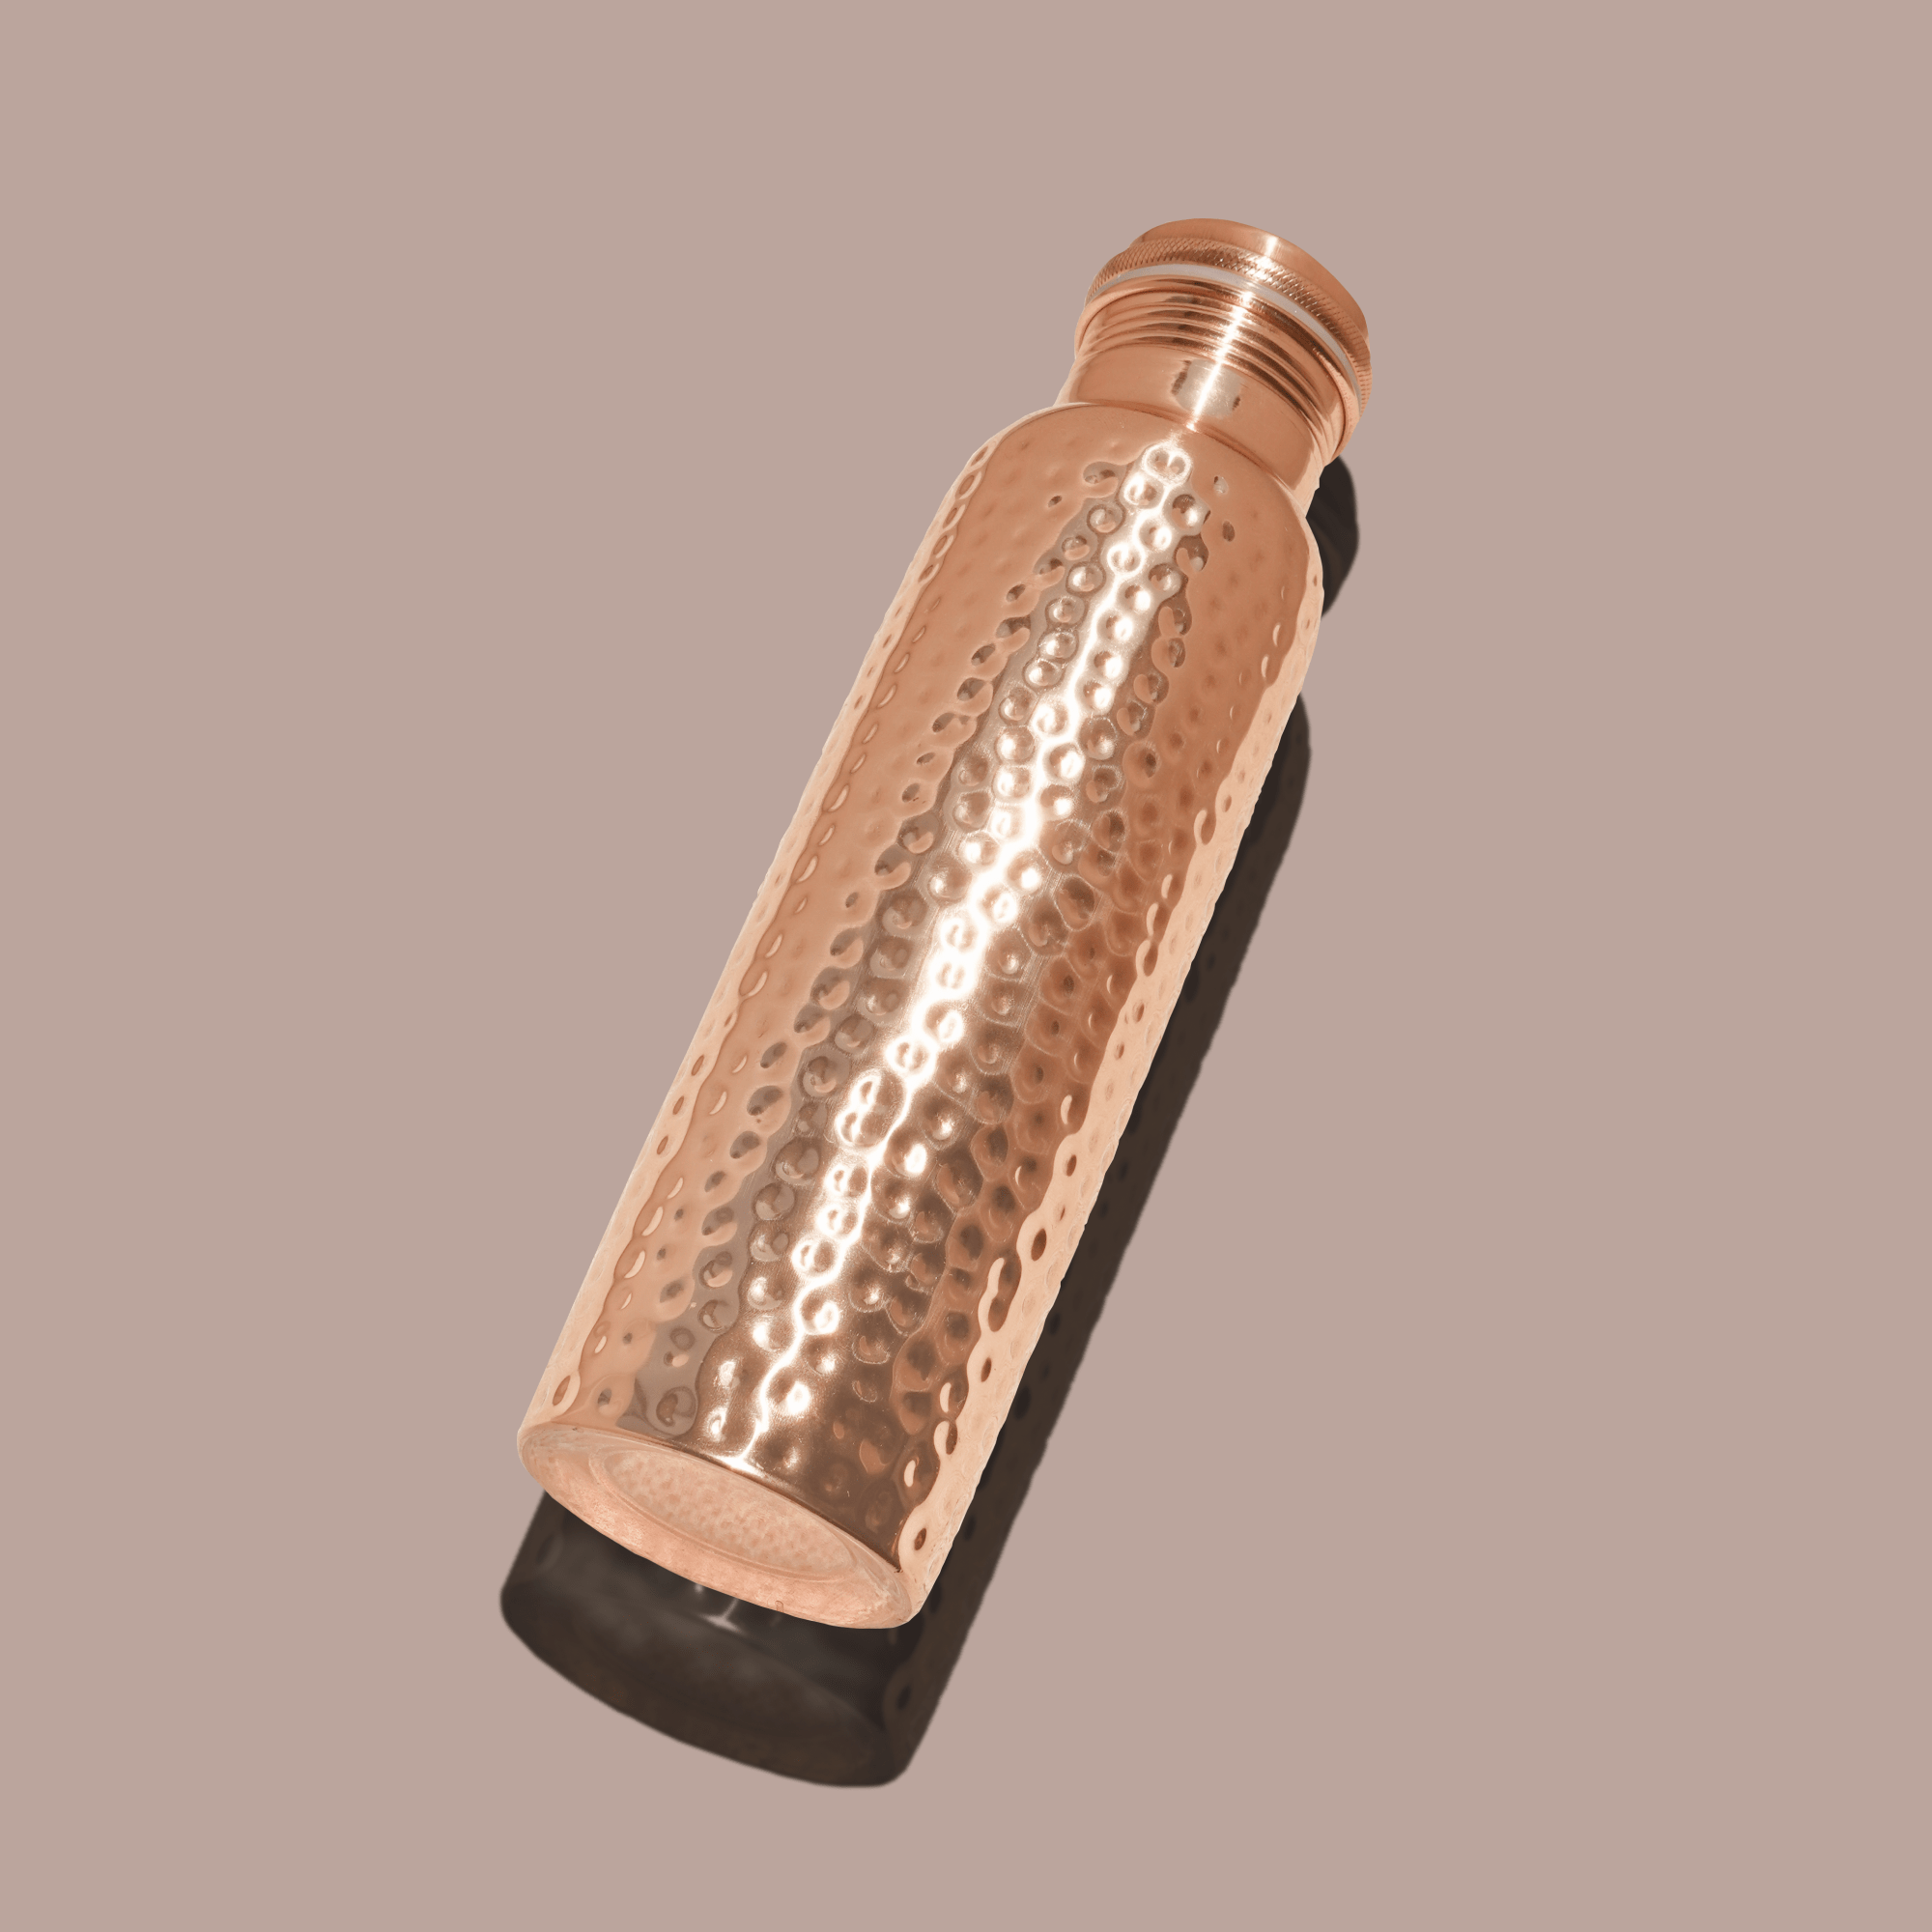 Prakti Beauty Copper Wellness Water Bottle